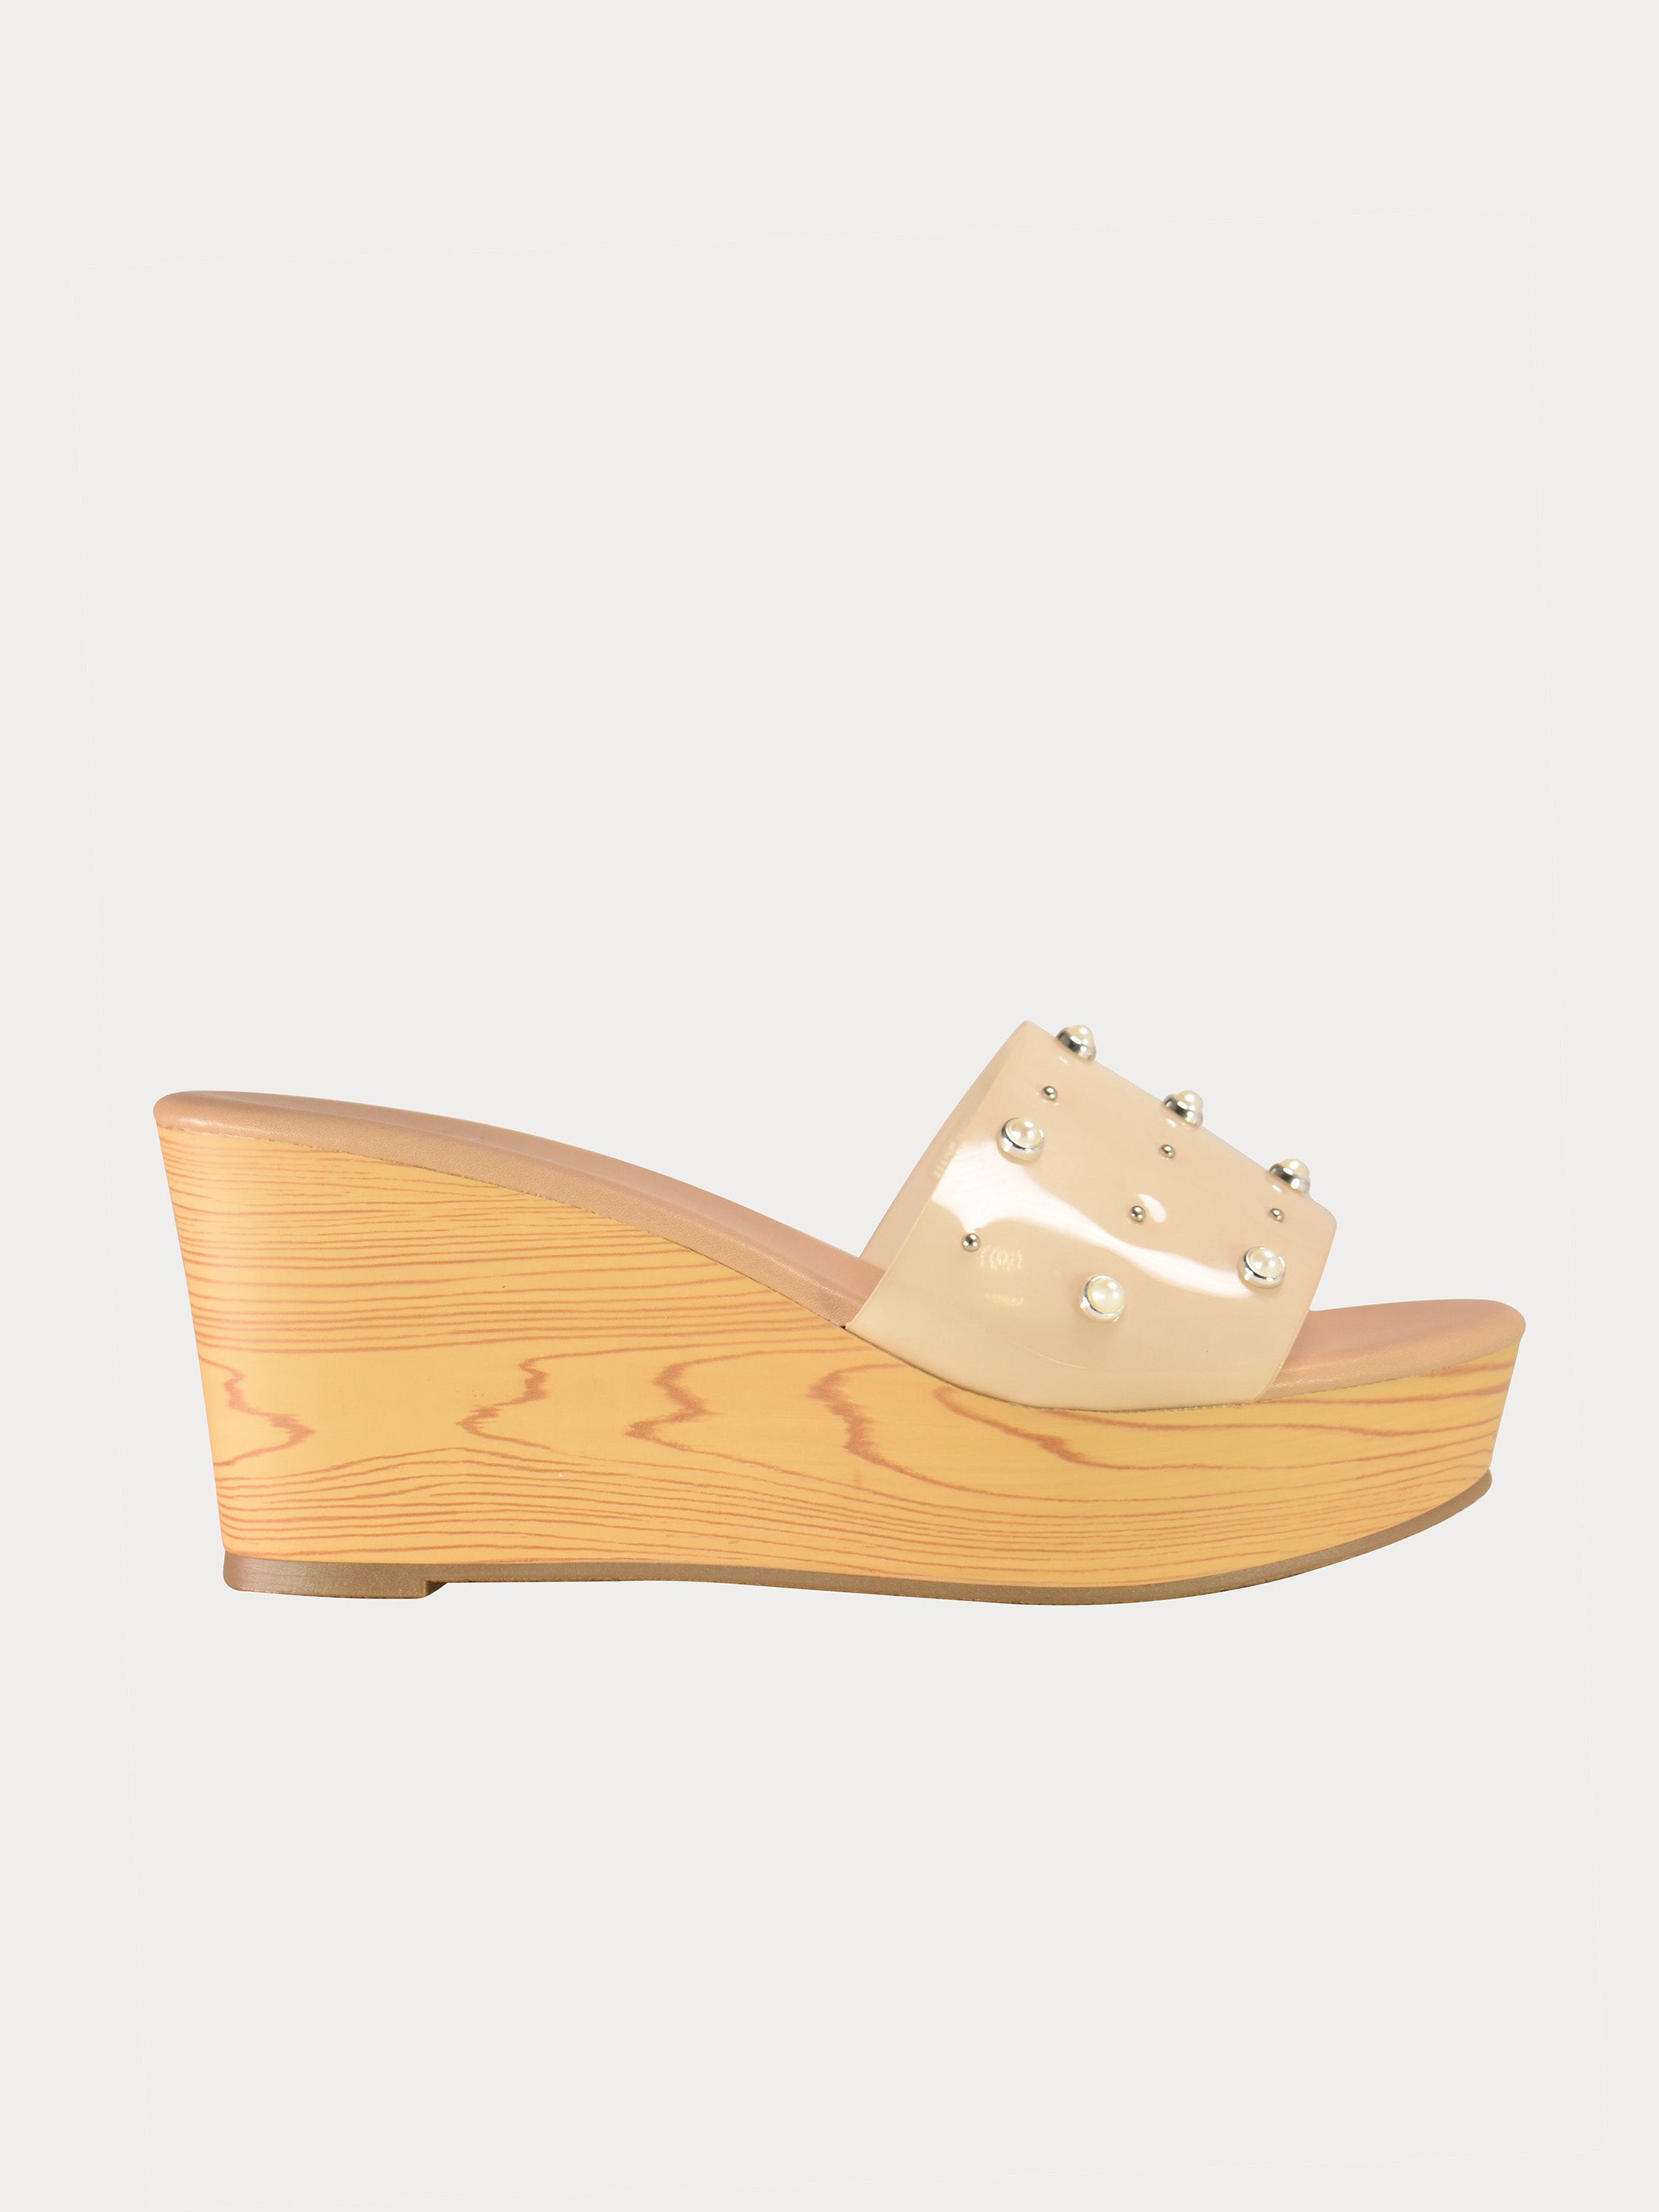 Michelle Morgan 814973 Women's Platform Sandals #color_Beige